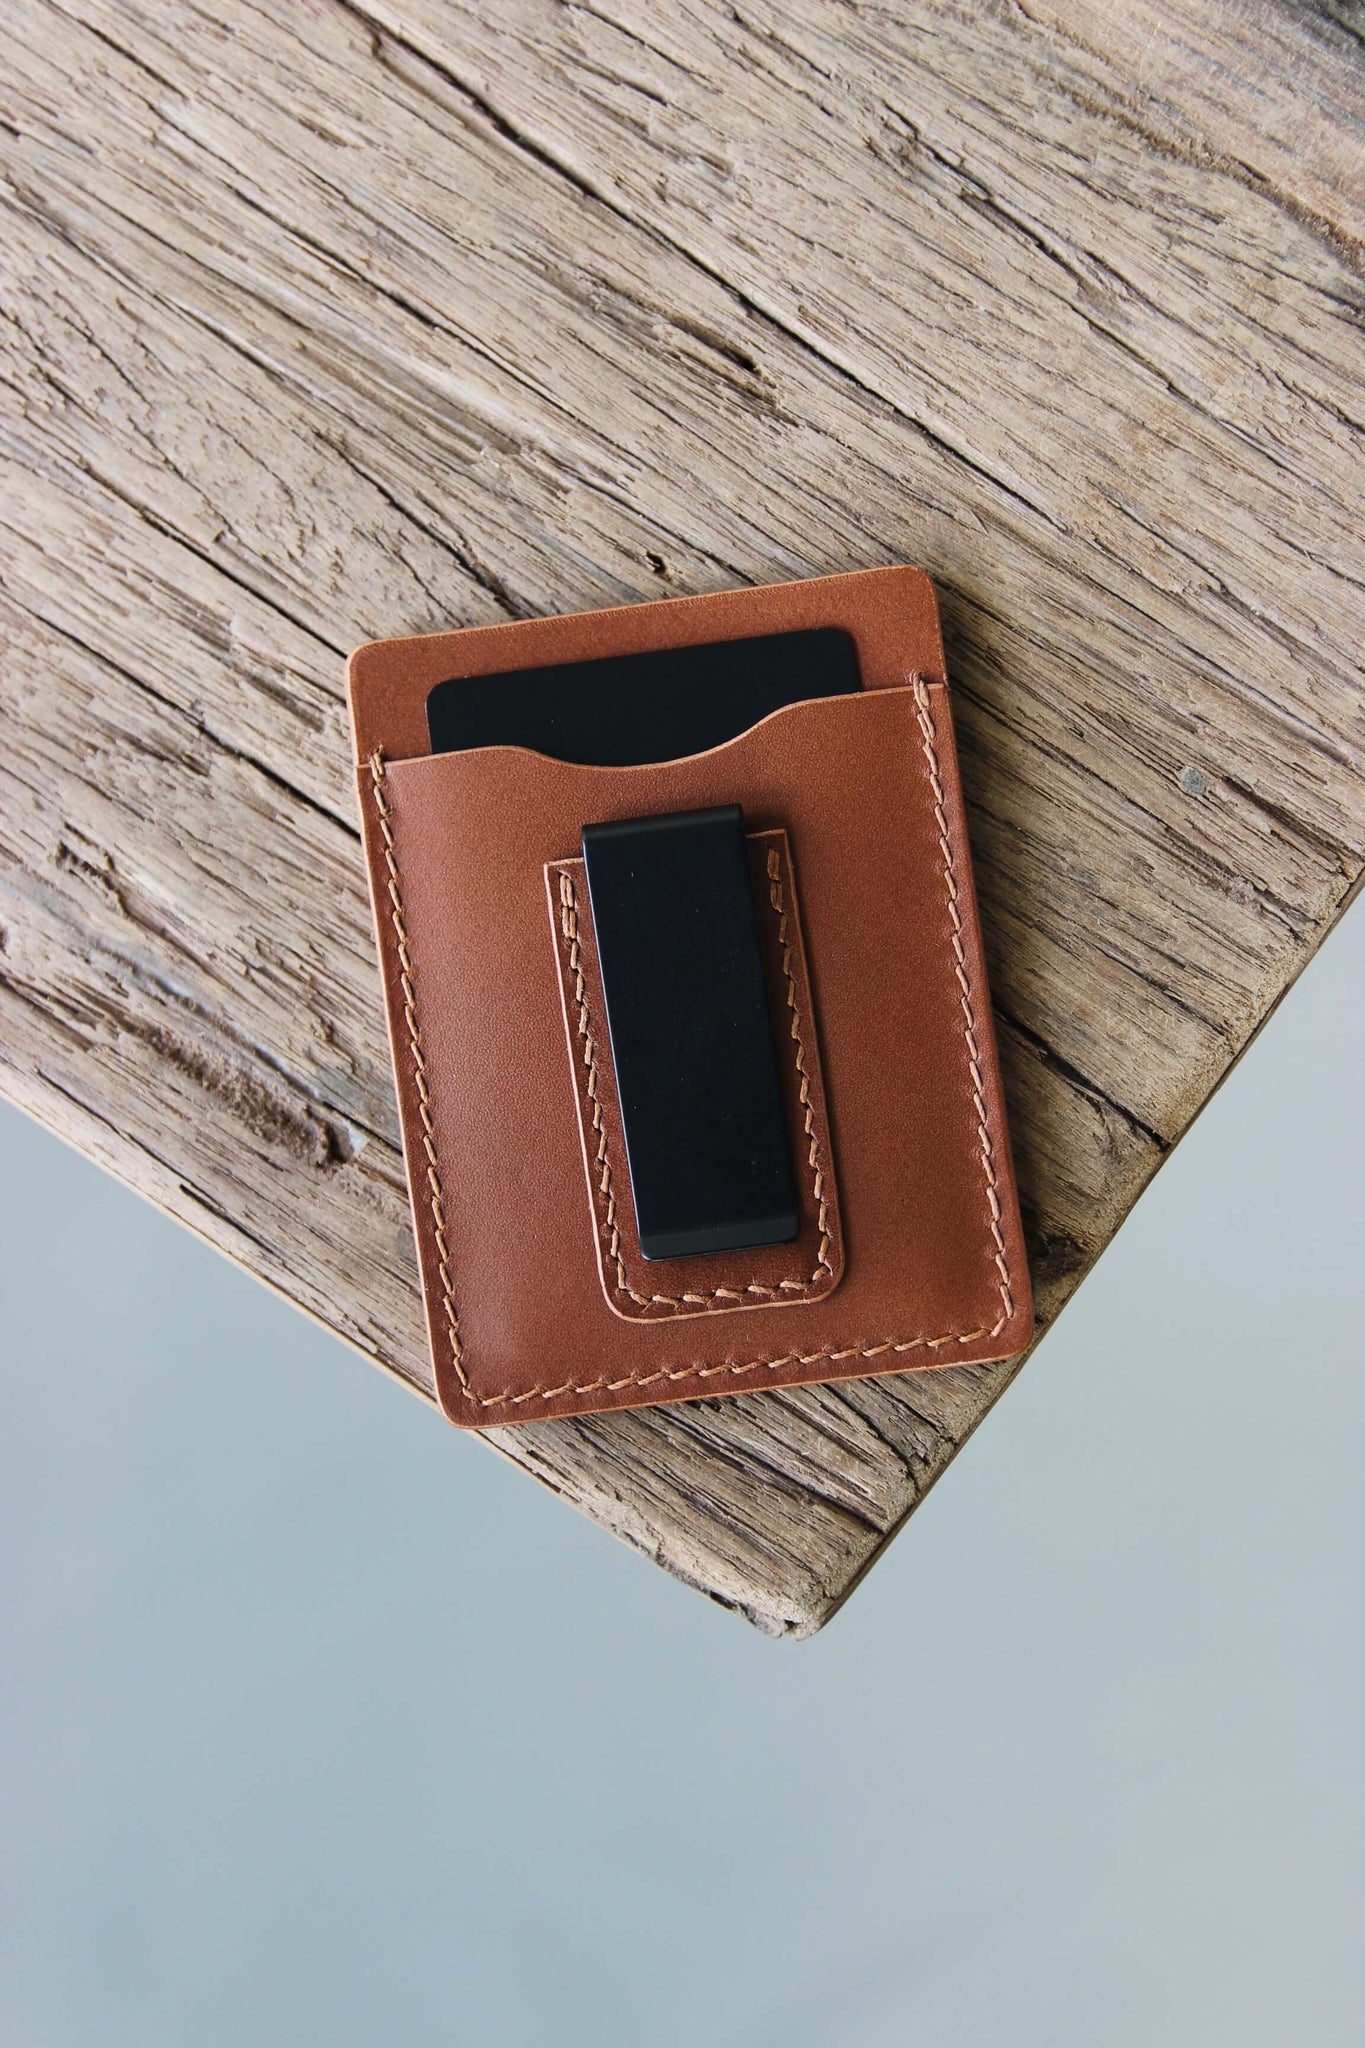 Ein Kreditkartenetui aus Leder in Braun mit integrierter Geldklammer liegt auf einer Holzplatte.